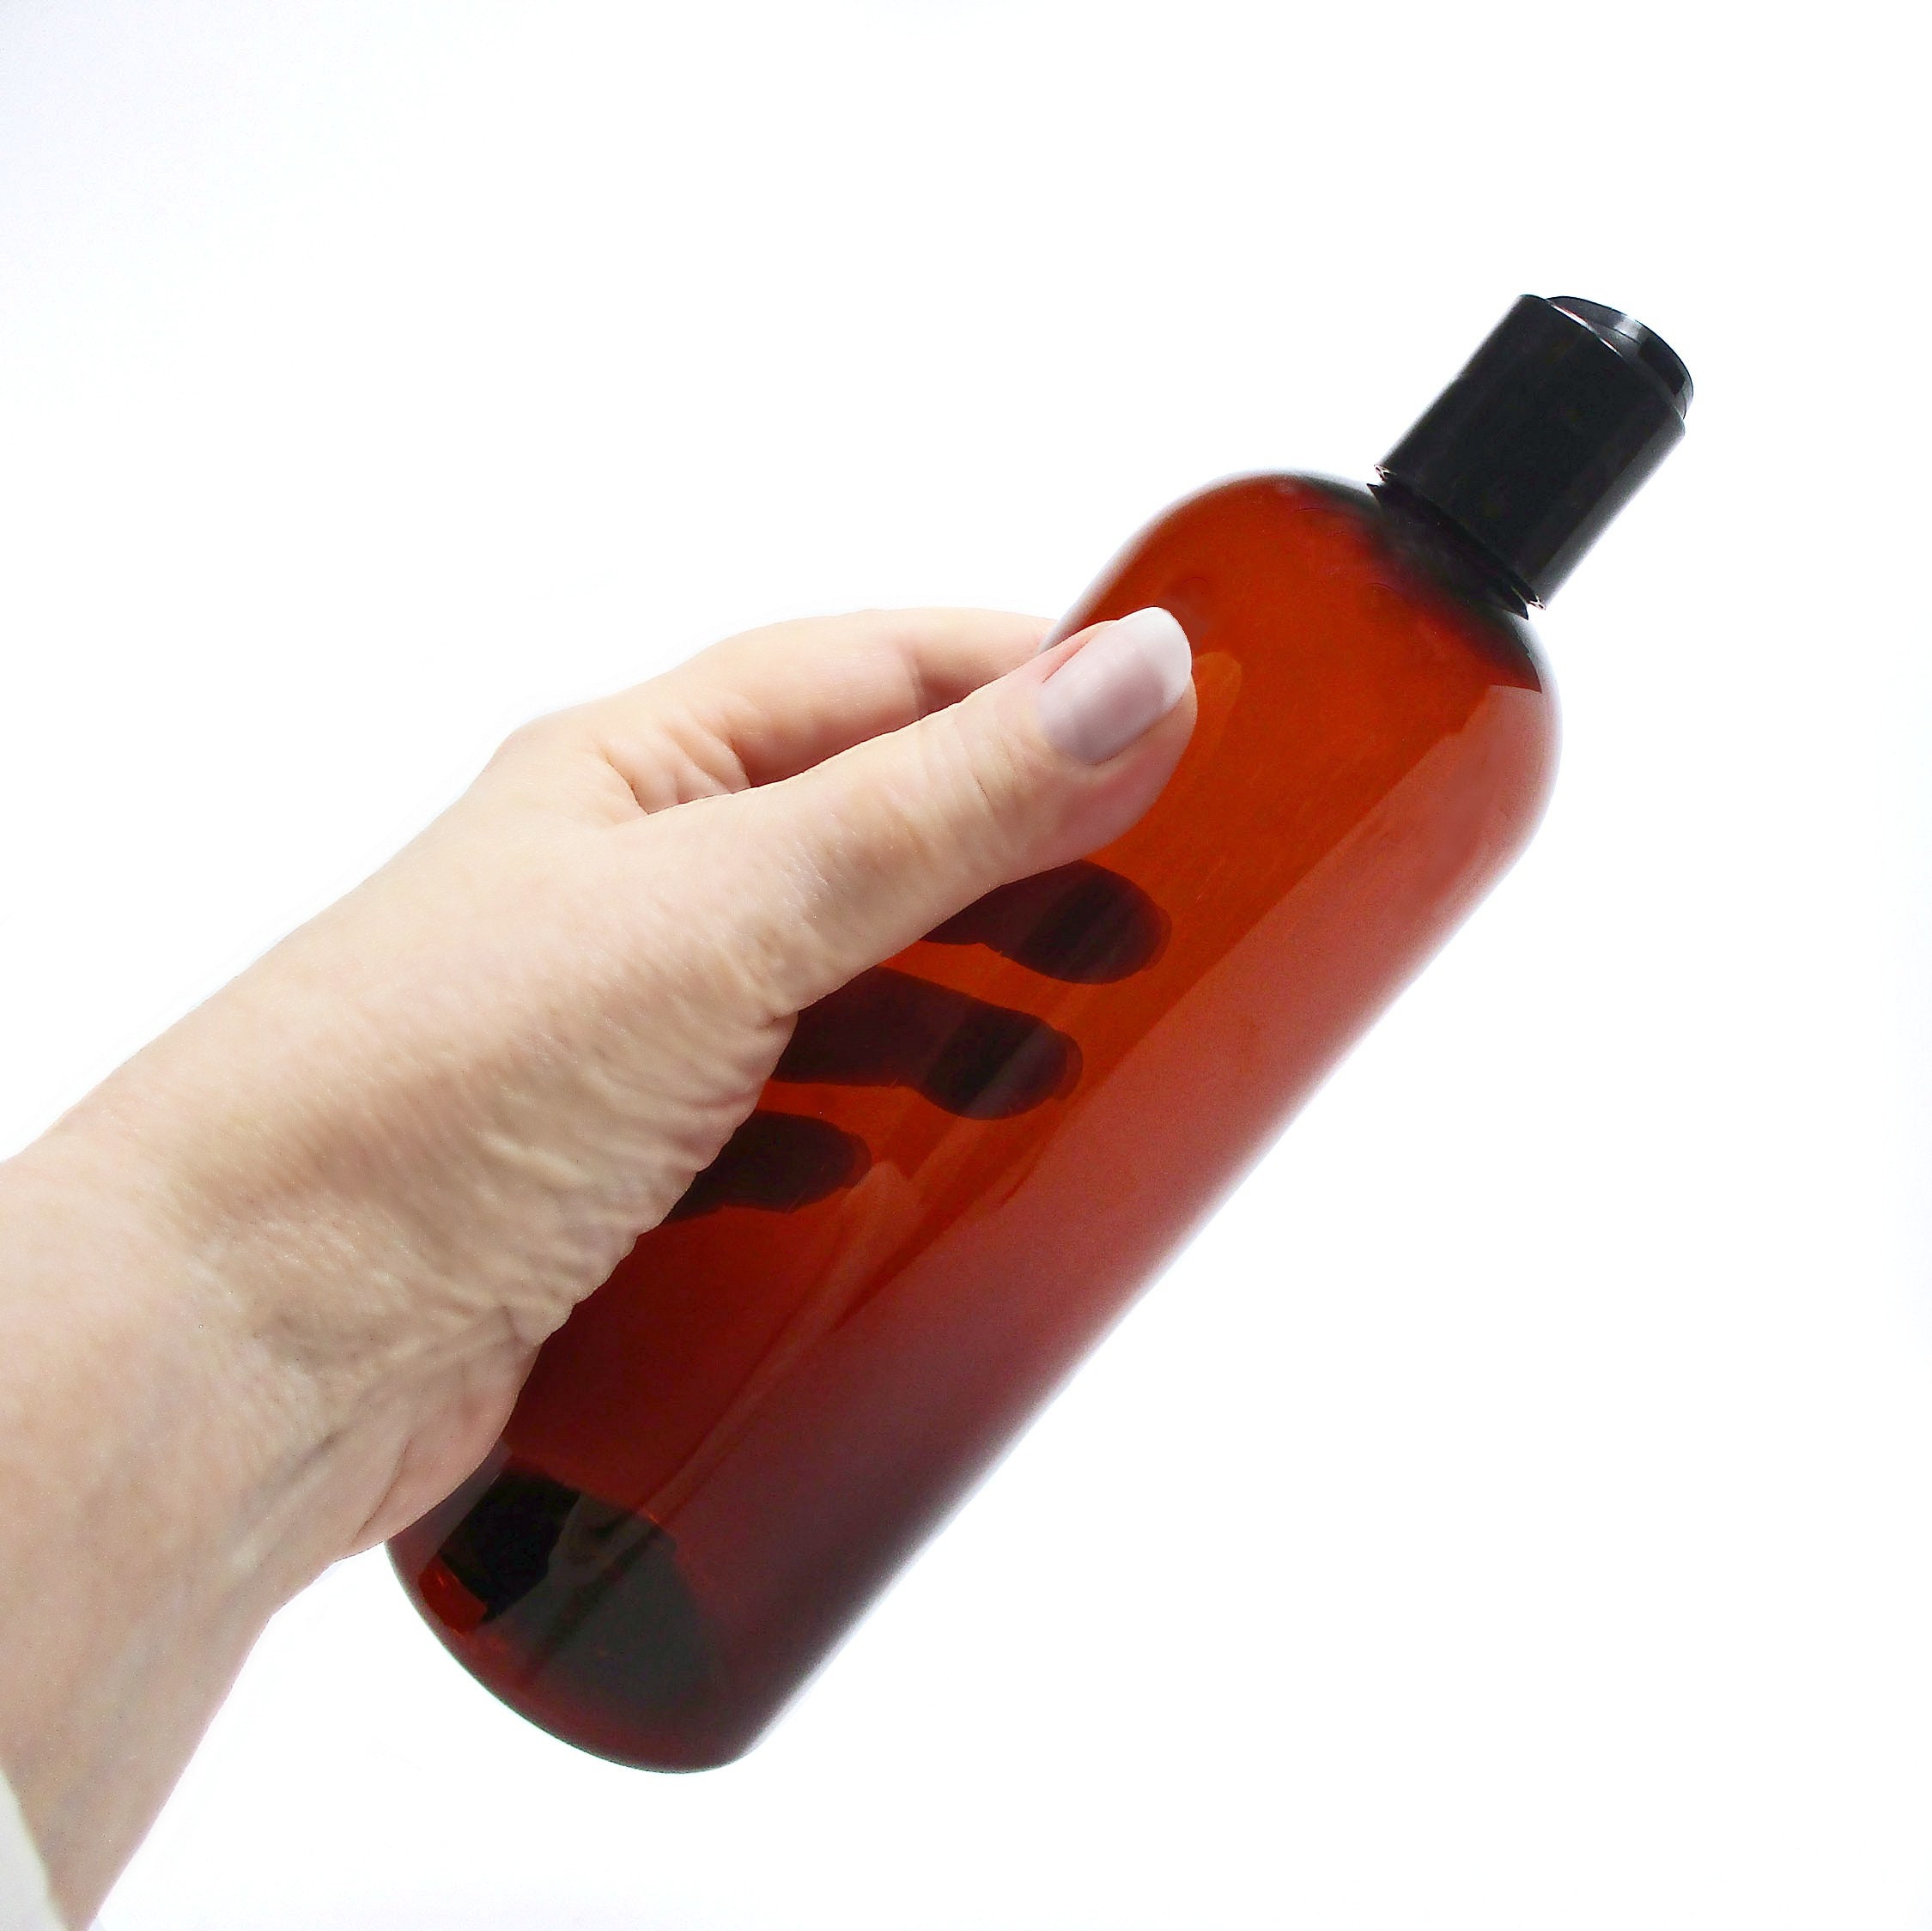 8 oz. (250ml) COBALT BLUE - Plastic Flask Bottle per each (fits